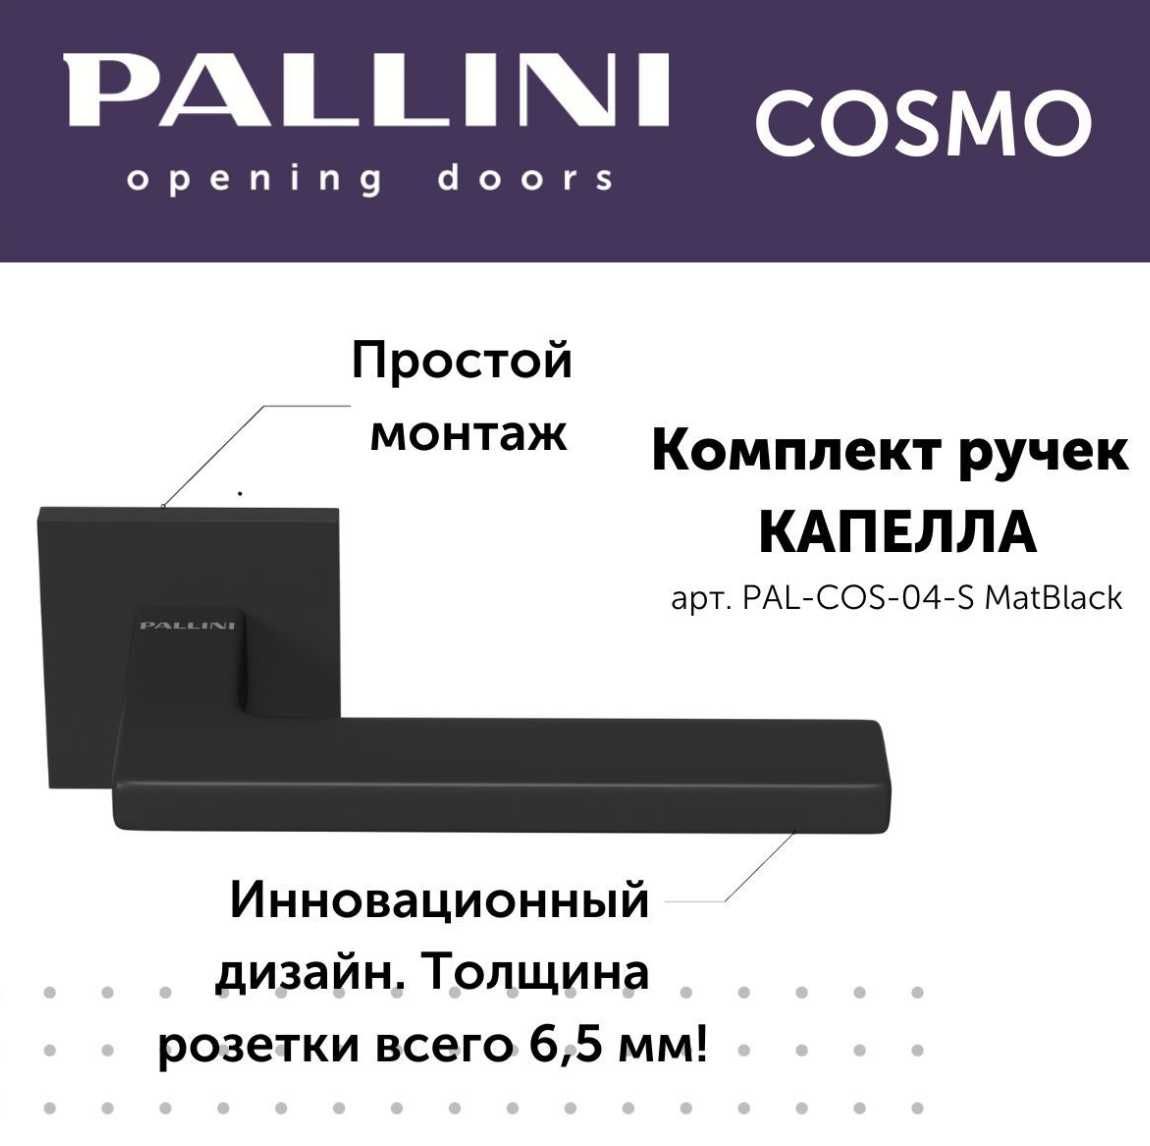 Ручки двери Pallini Cosmo